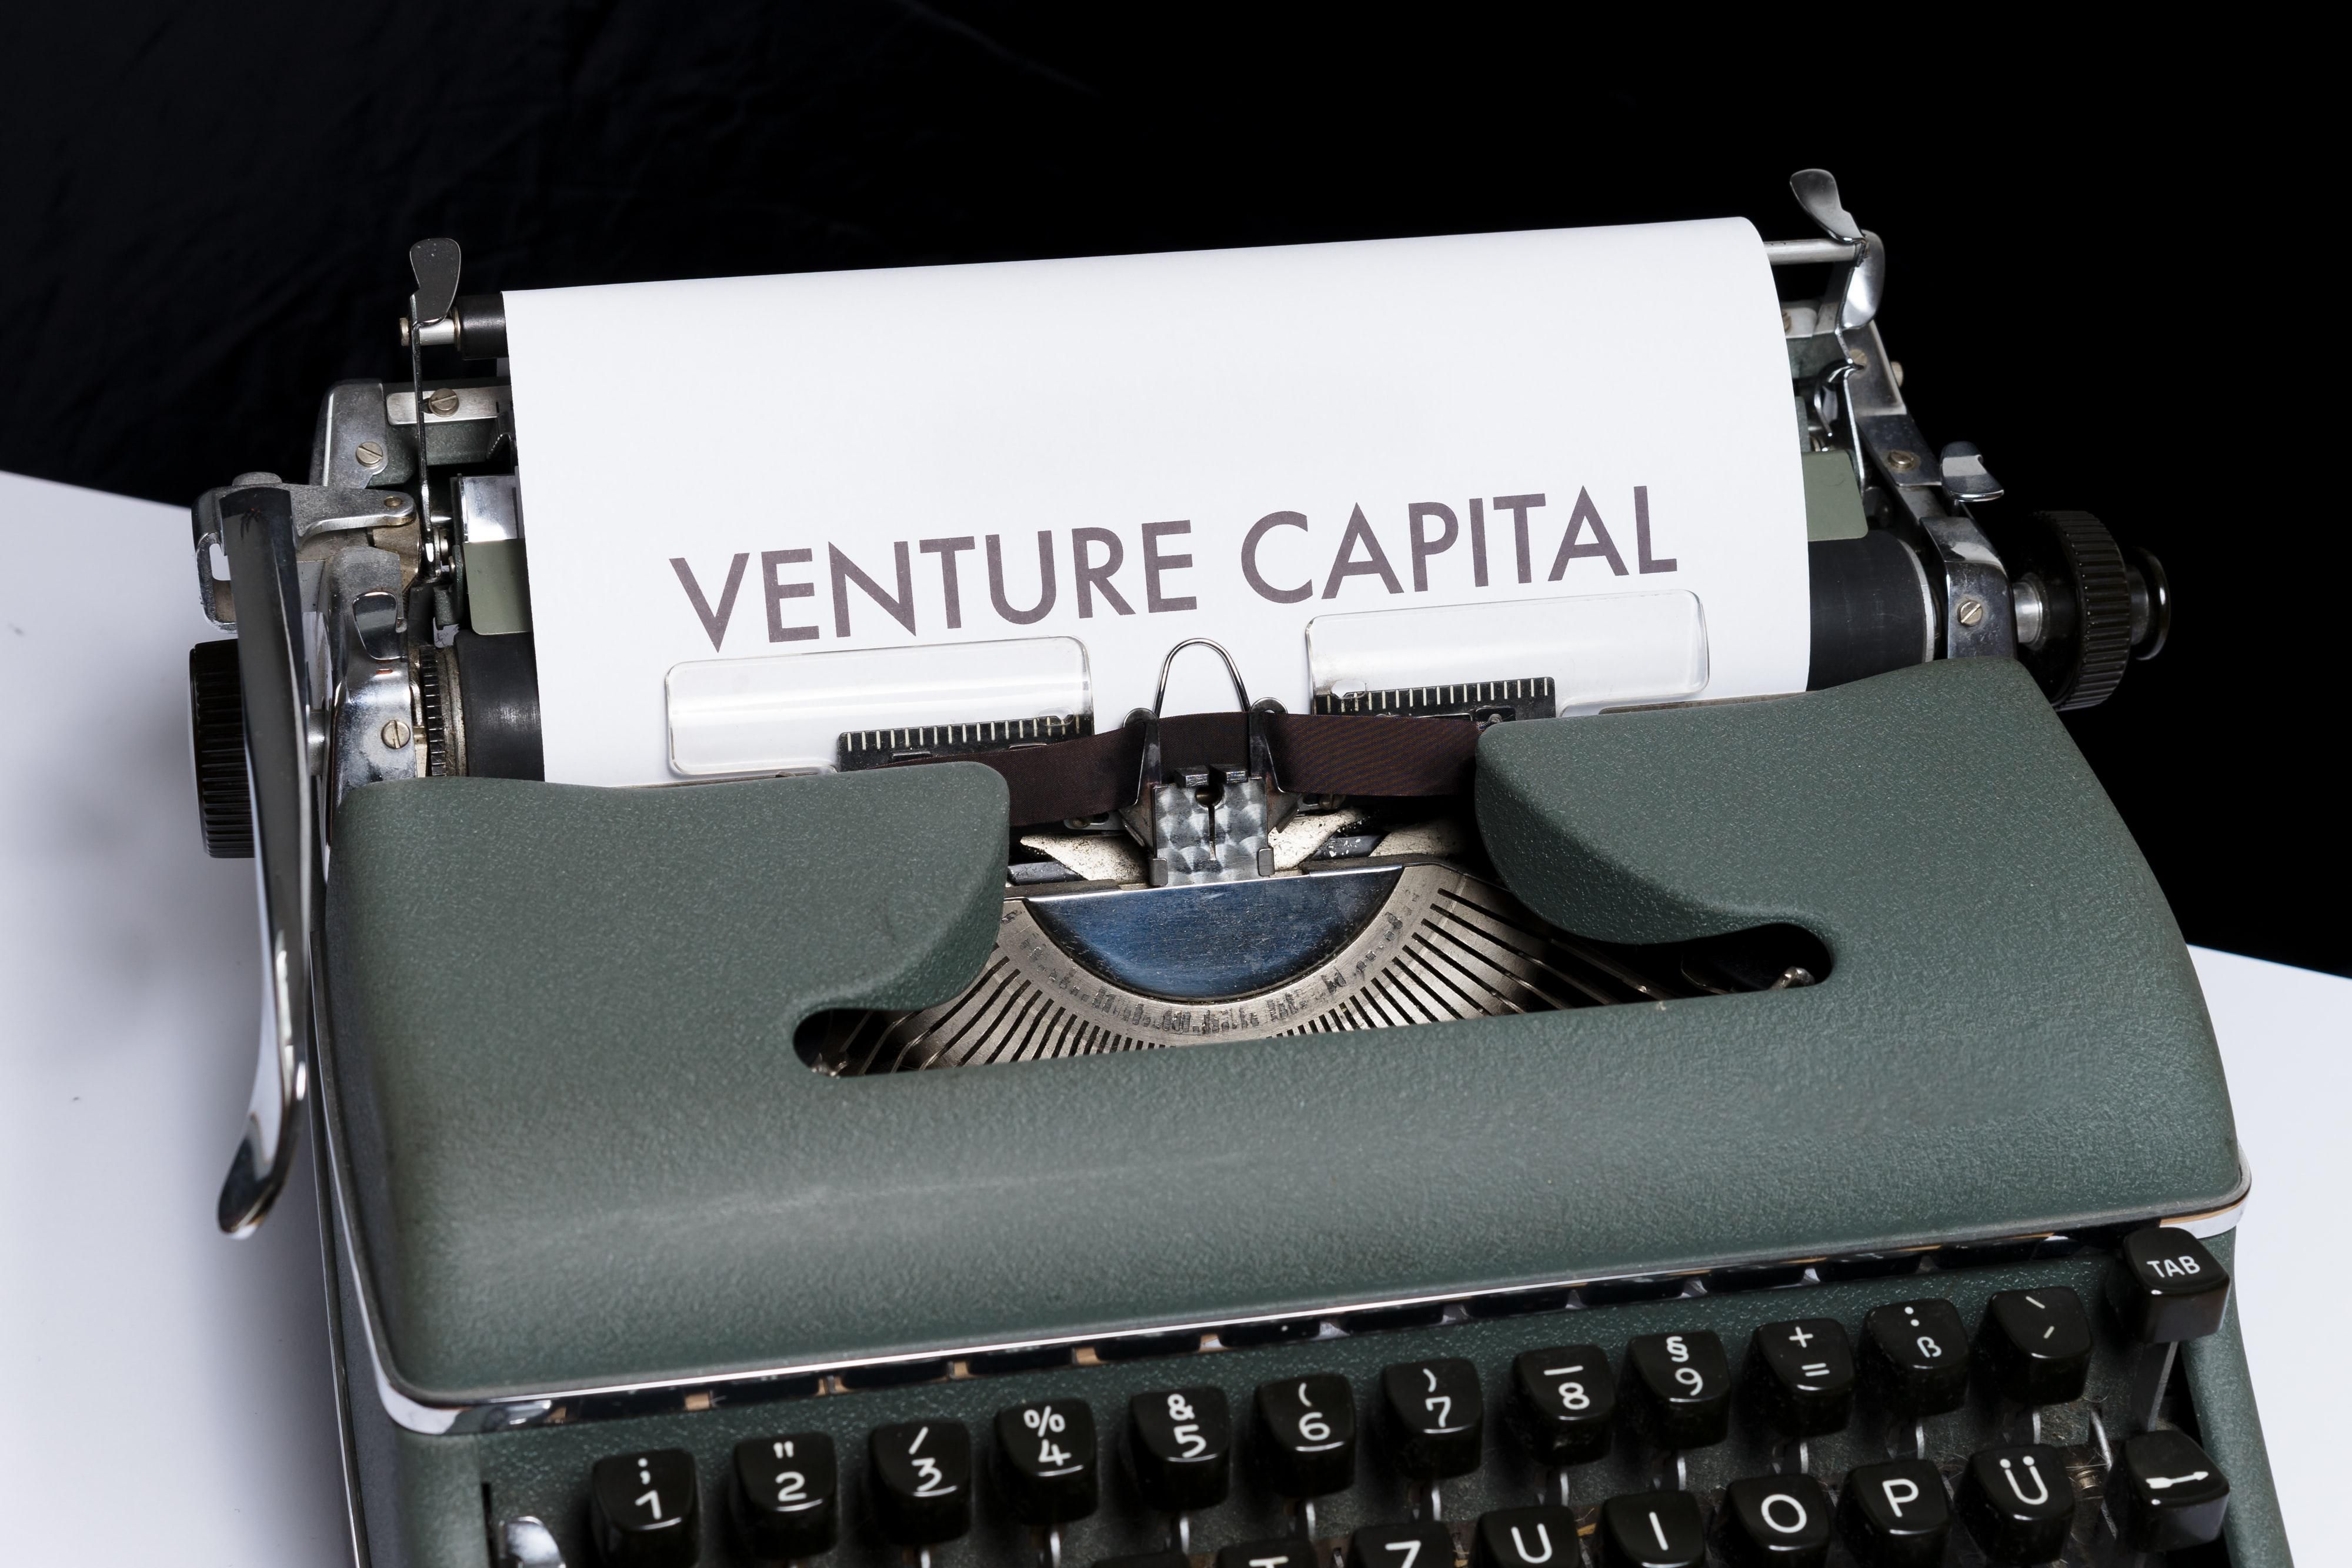 Egy szürkés-zöldes írógépen a Venture Capital szavakat gépelték be, ami kockázati tőkét jelent, az írógép egy fehér asztalon van, a háttér sötét